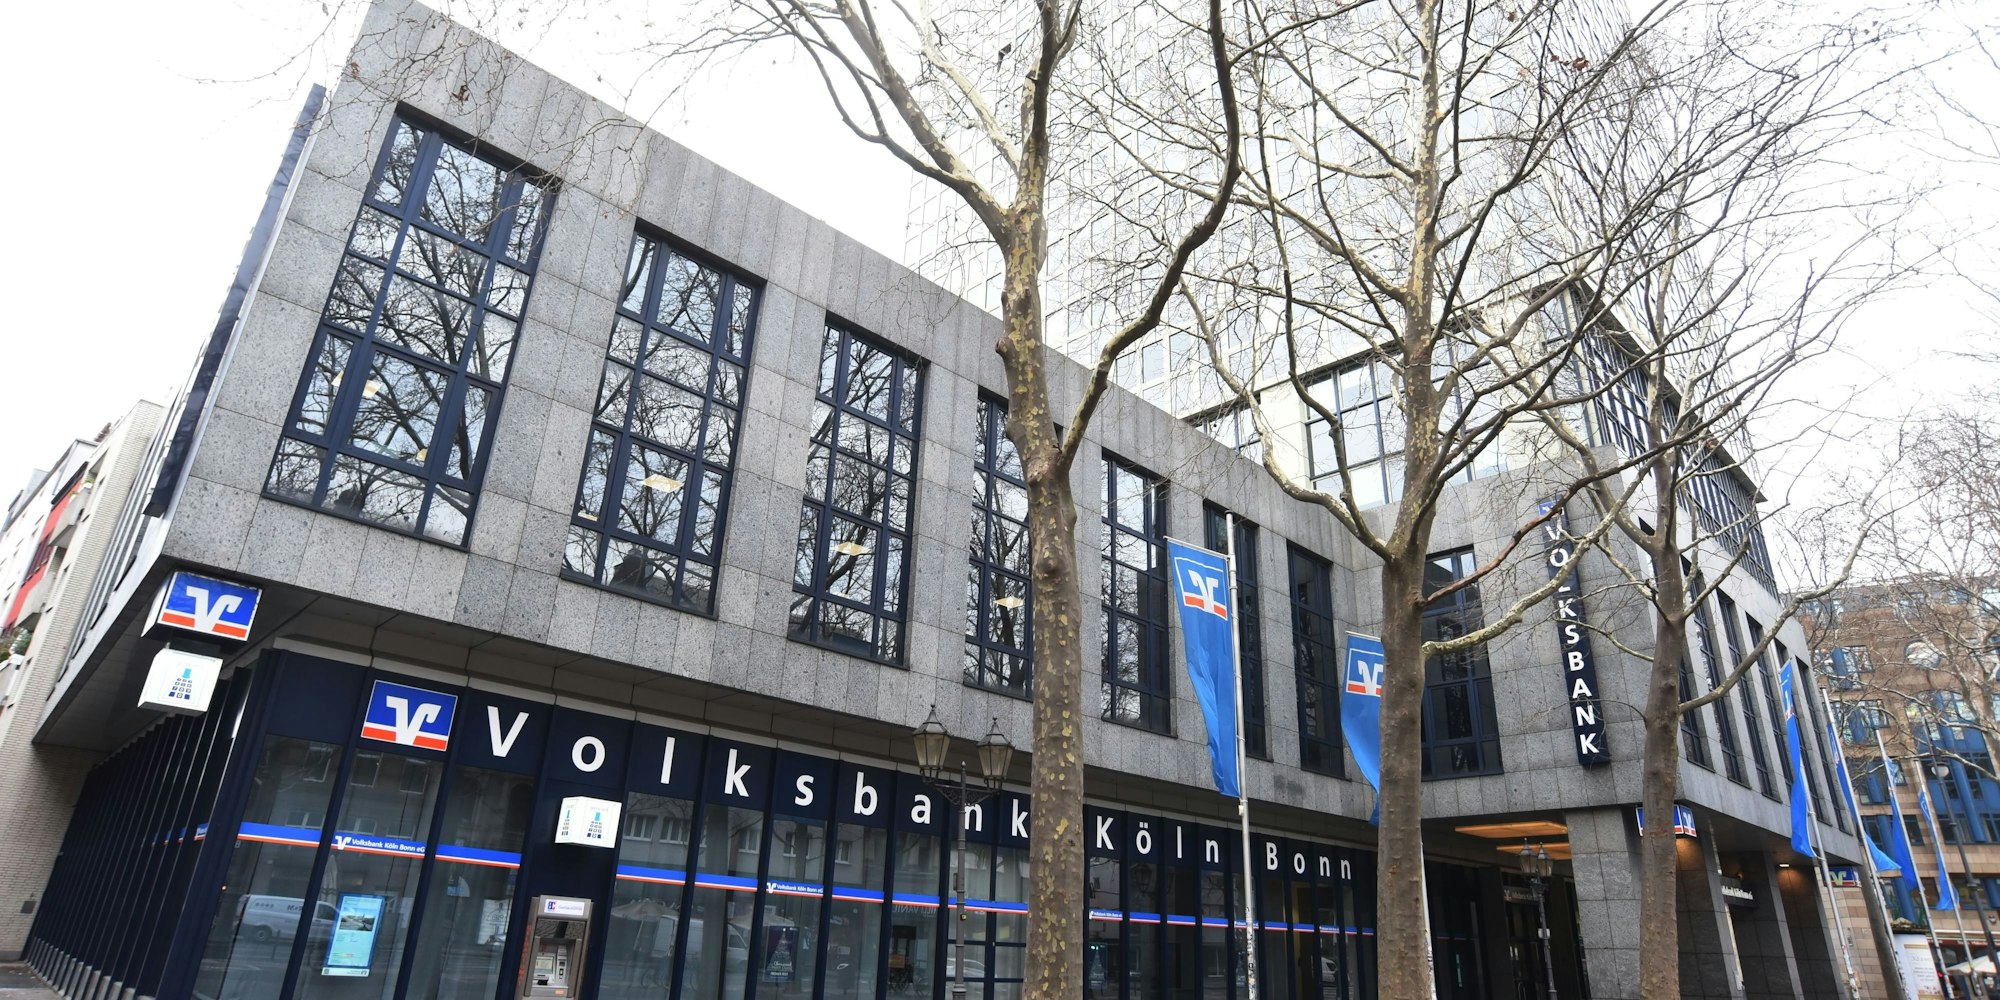 Volksbank Köln-Bonn auf dem Hohenzollernring